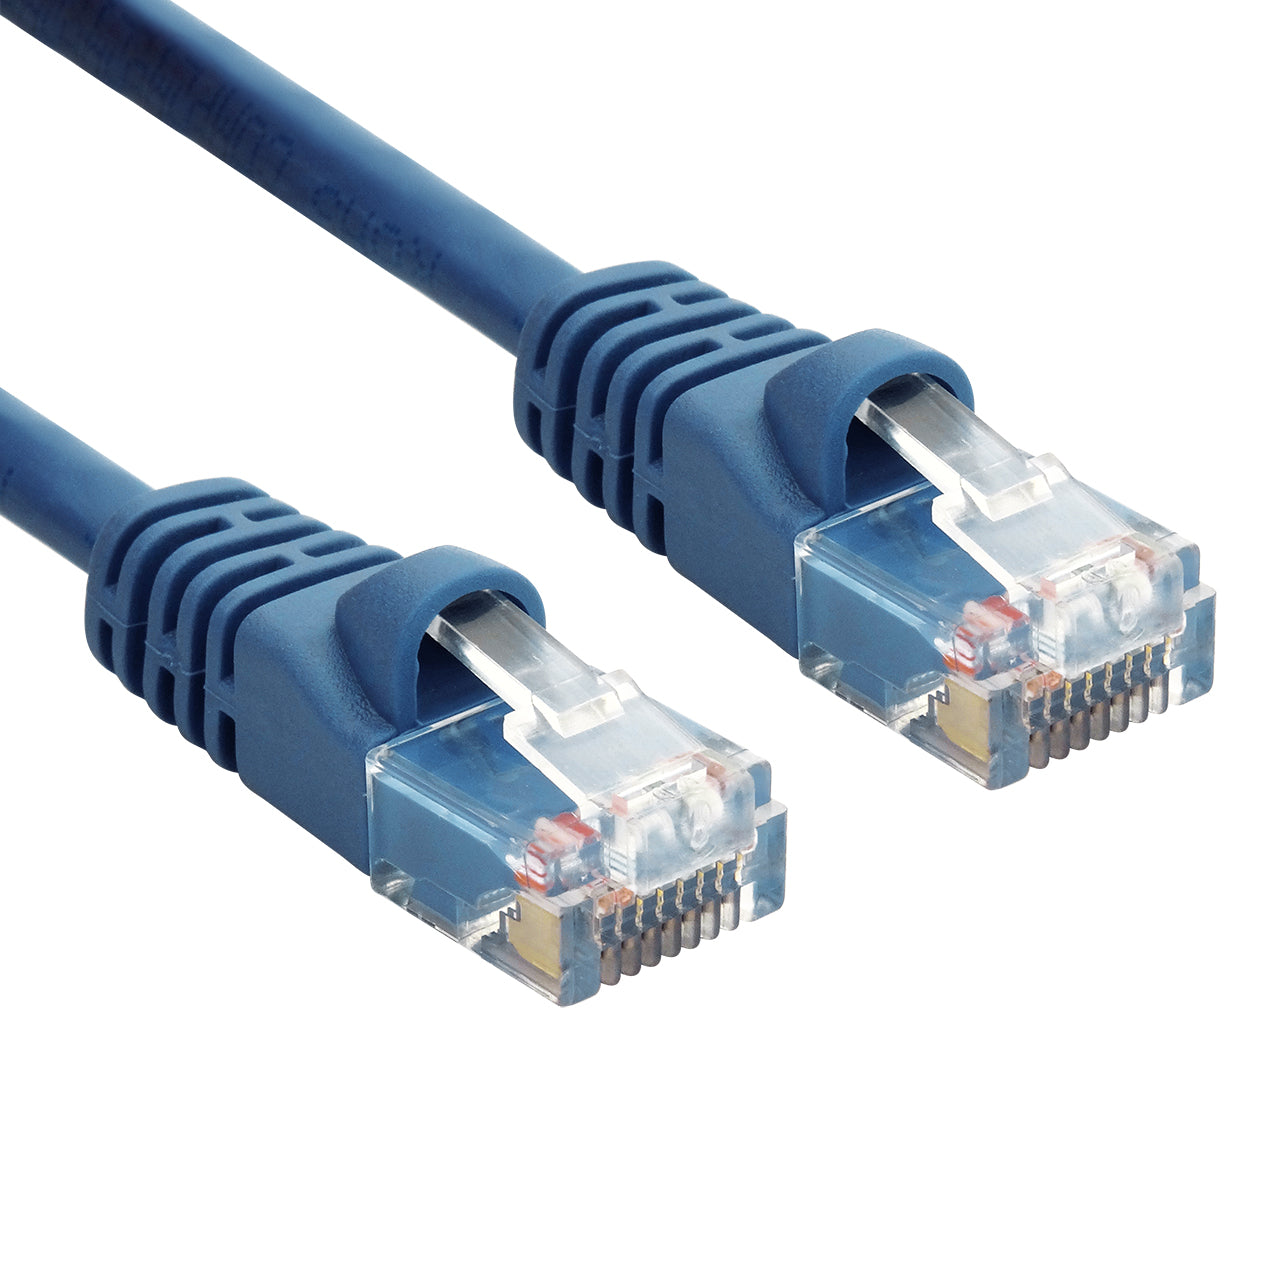 Cable de red internet UTP patch cord CAT 5e con conectores RJ45